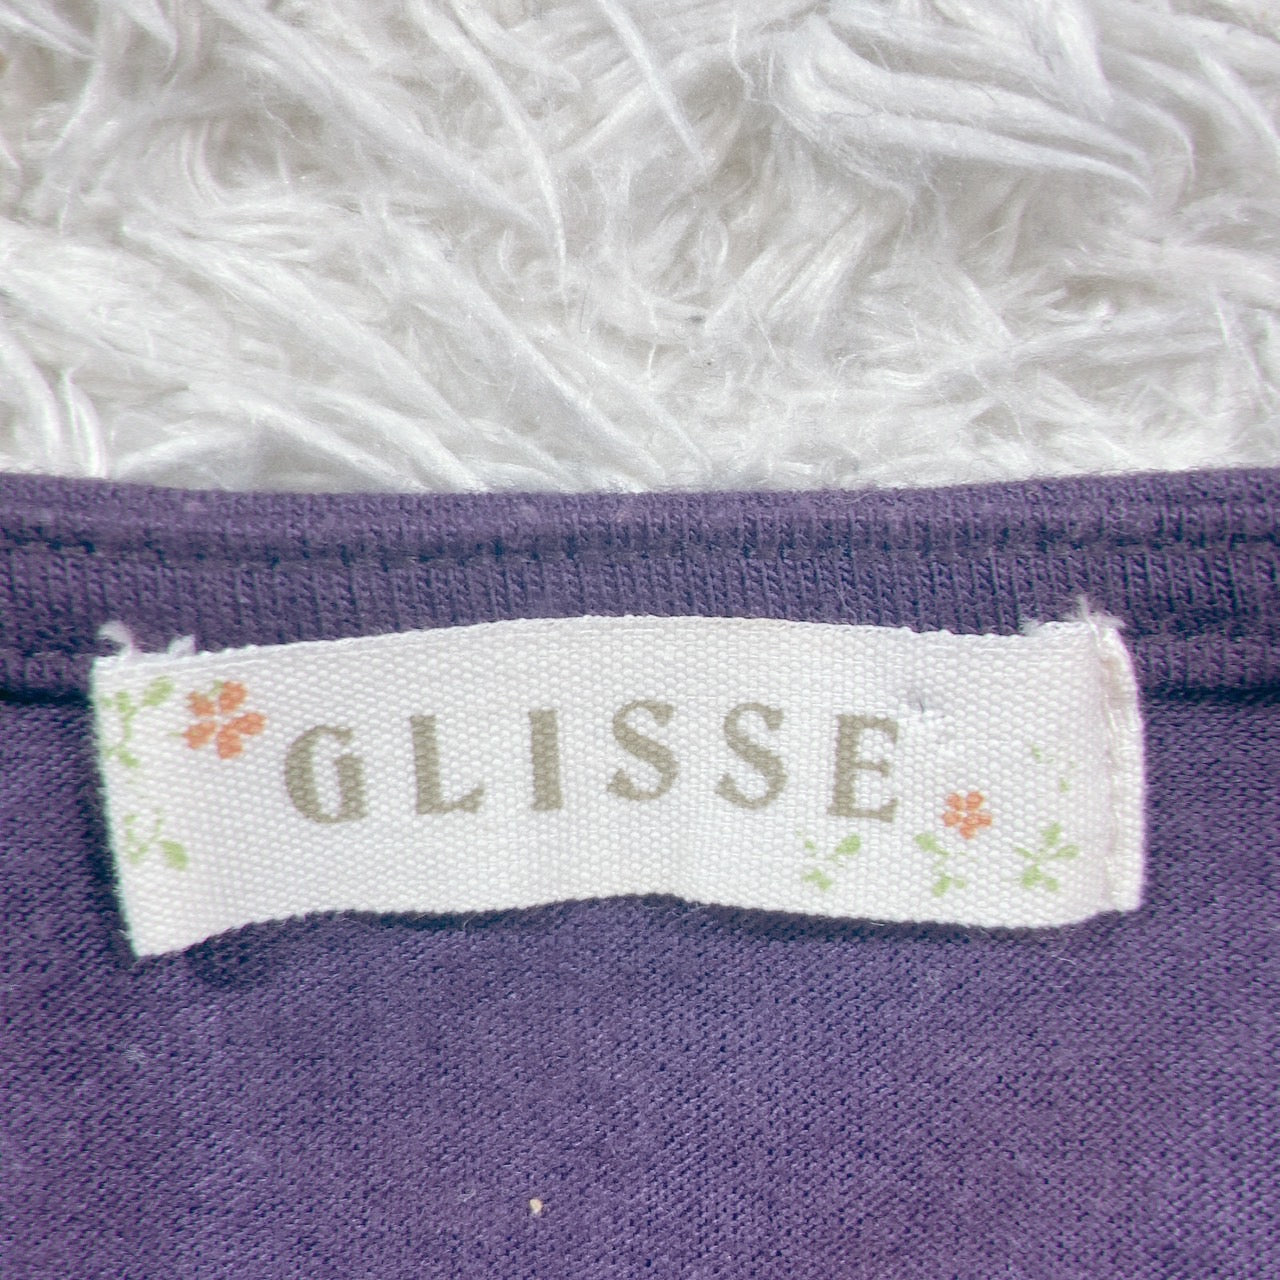 【26092】 GLISSE グリッセ ノースリーブブラウス サイズM パープル レース刺繍 胸下切り替え 薄手 大人っぽい きれいめ レディース